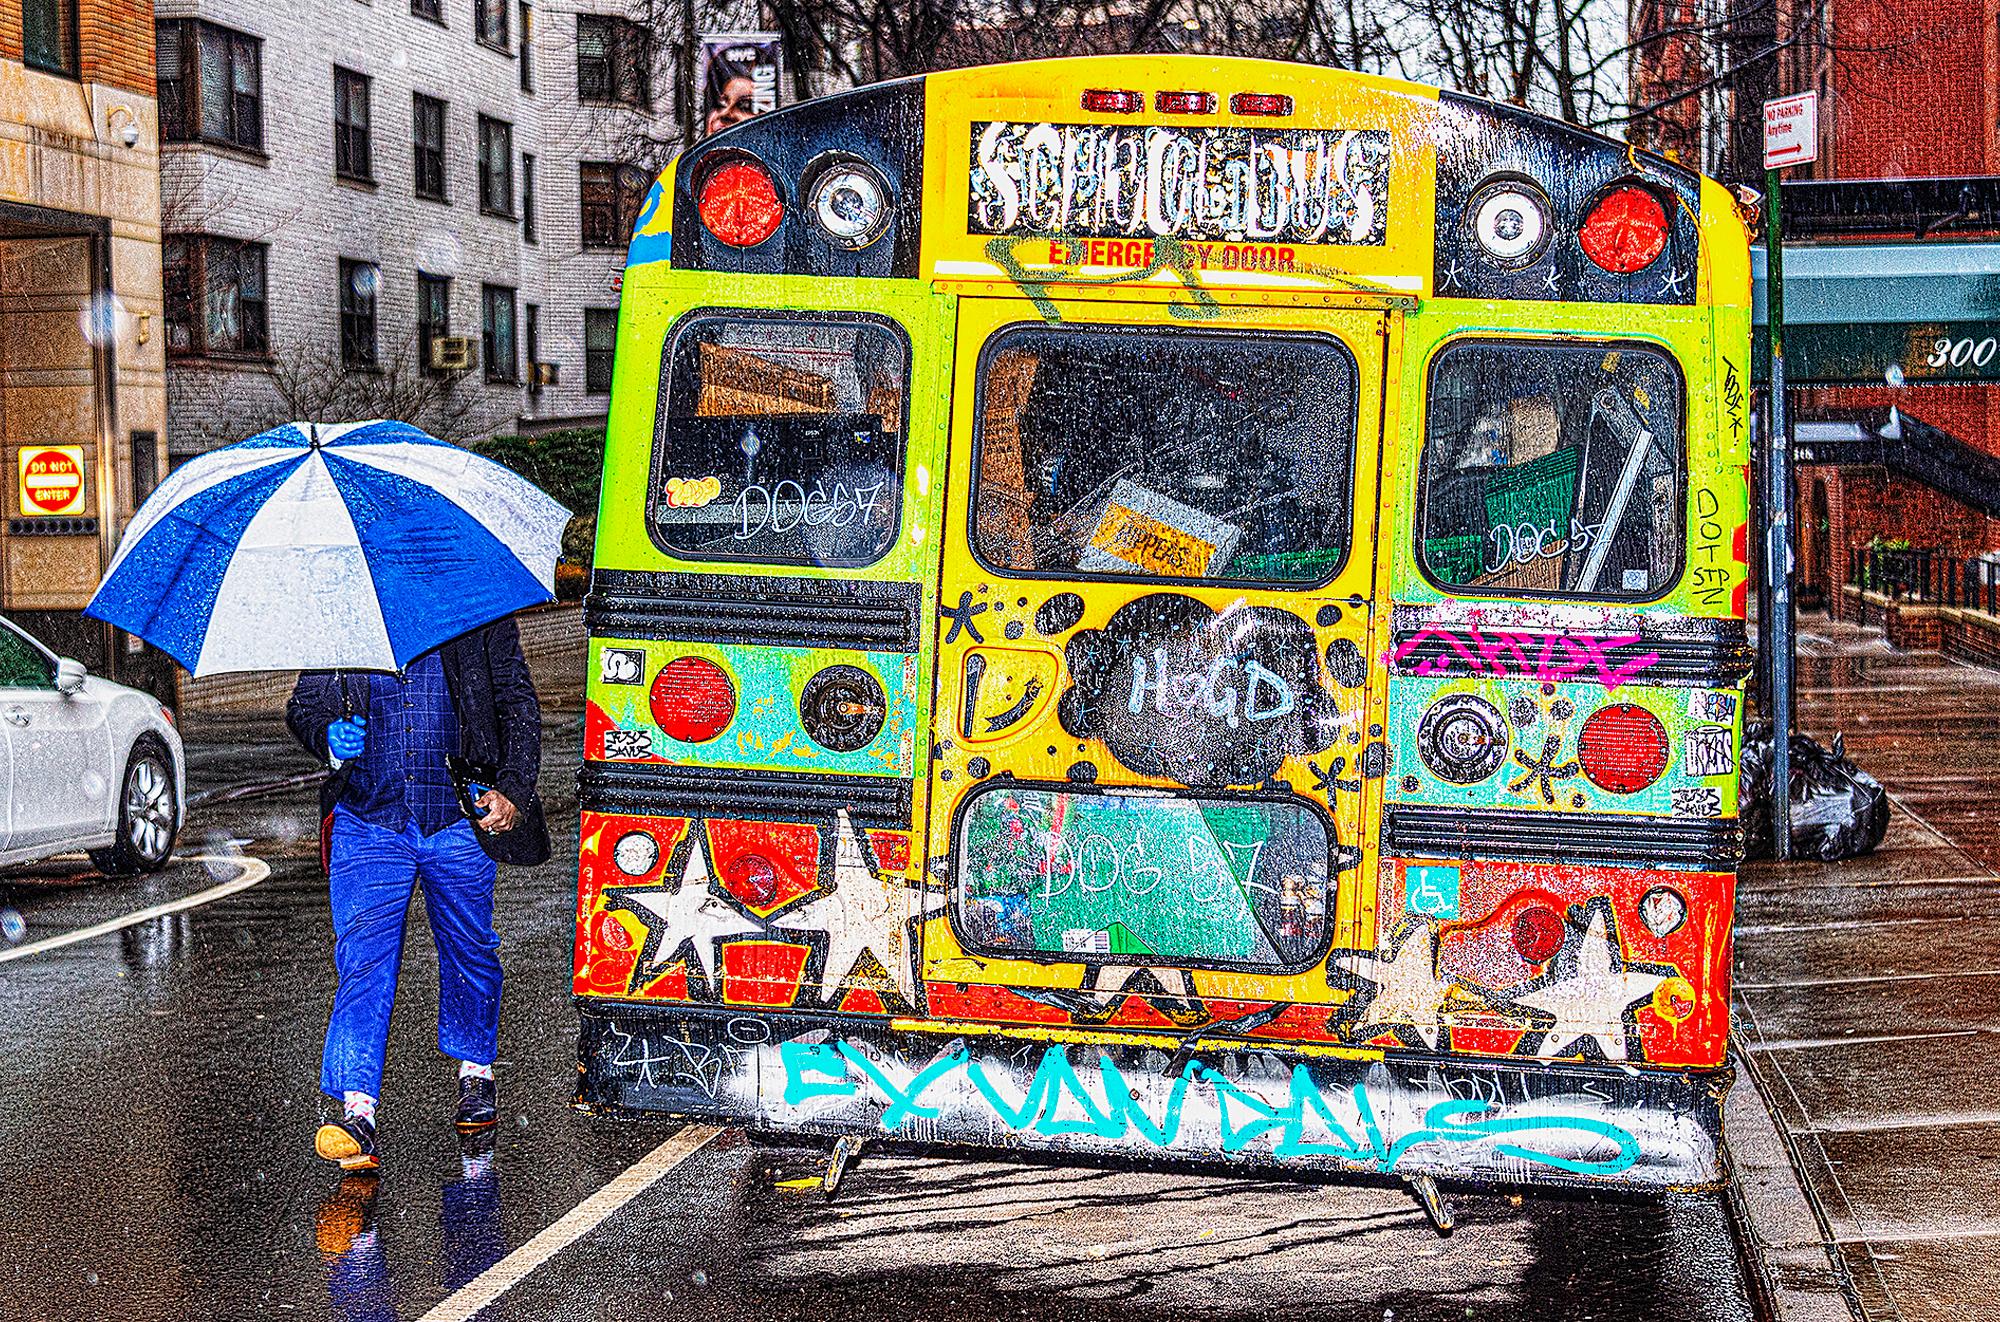 Le contraste de deux styles artistiques - Graffiti Bus et Umbrella bleu un jour de pluie 